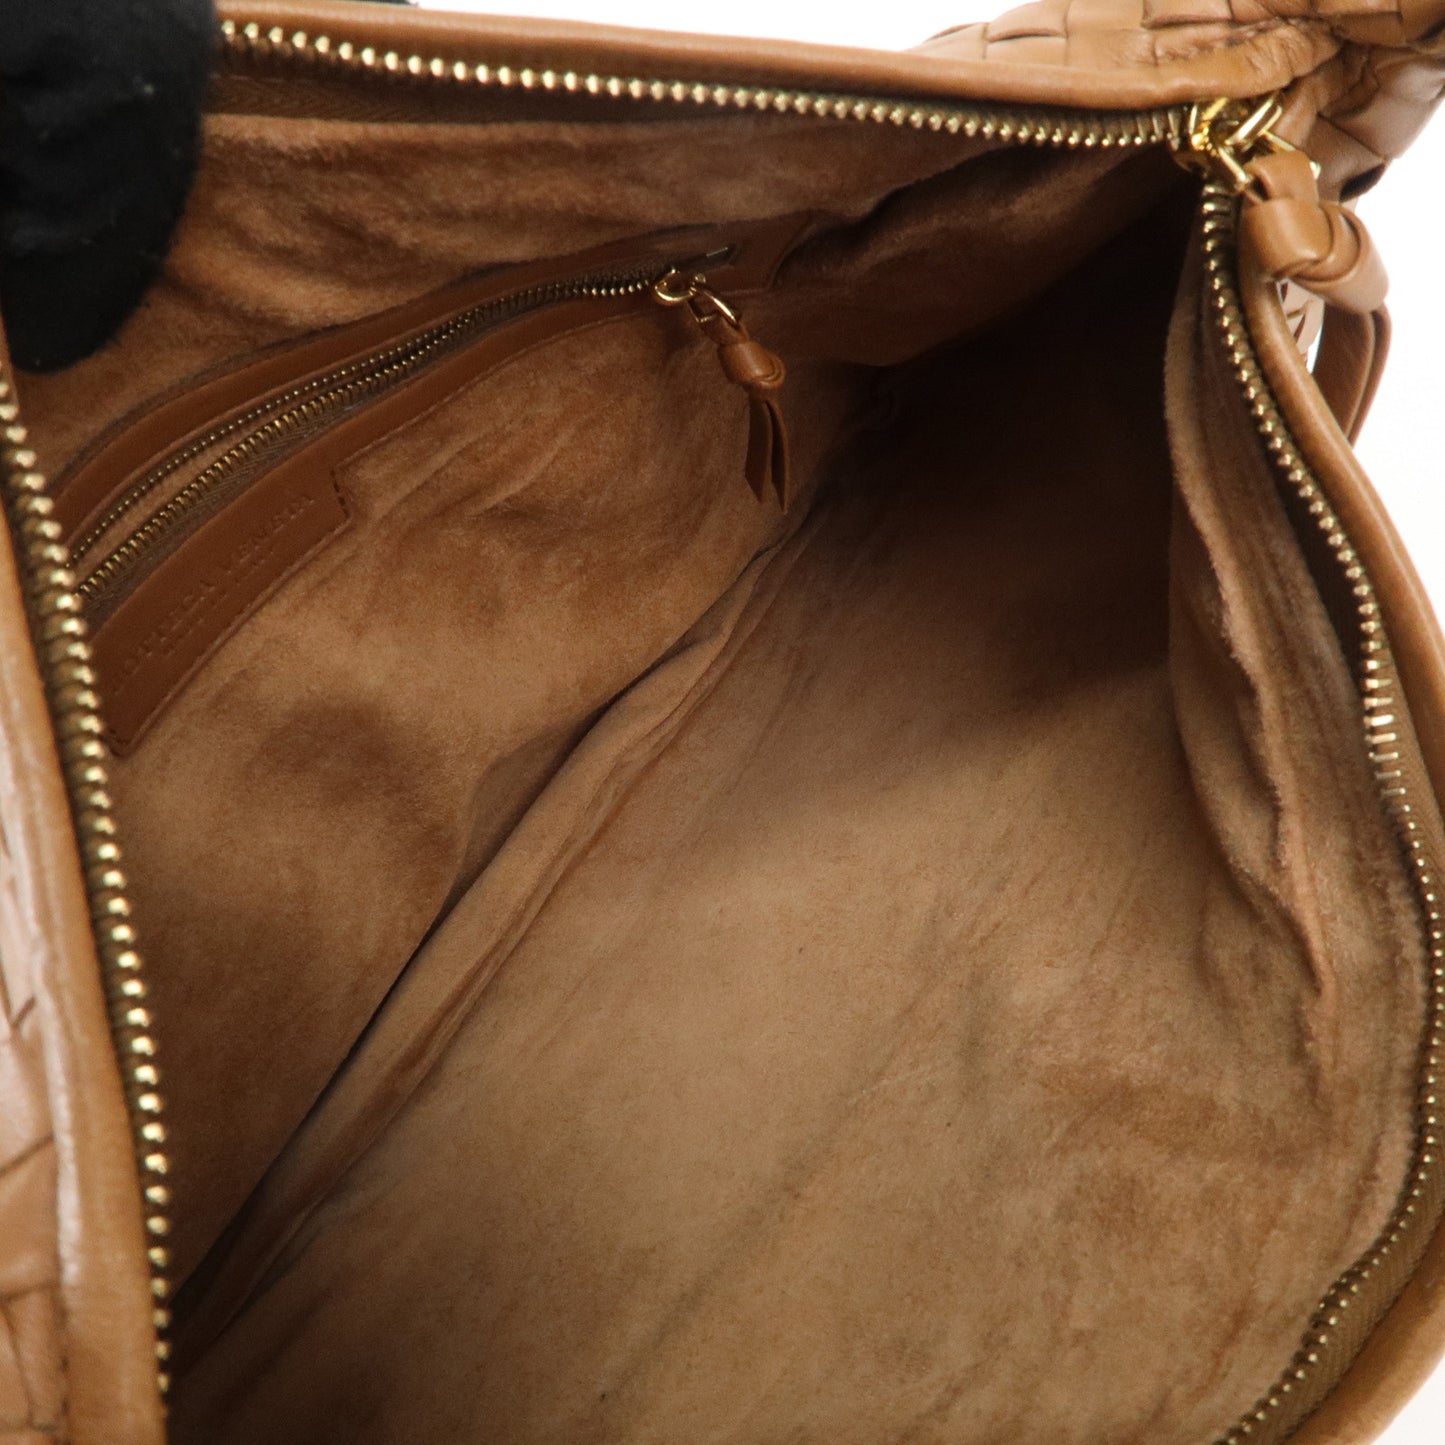 BOTTEGA VENETA Intrecciato Hobo Leather Shoulder Bag Brown 115653